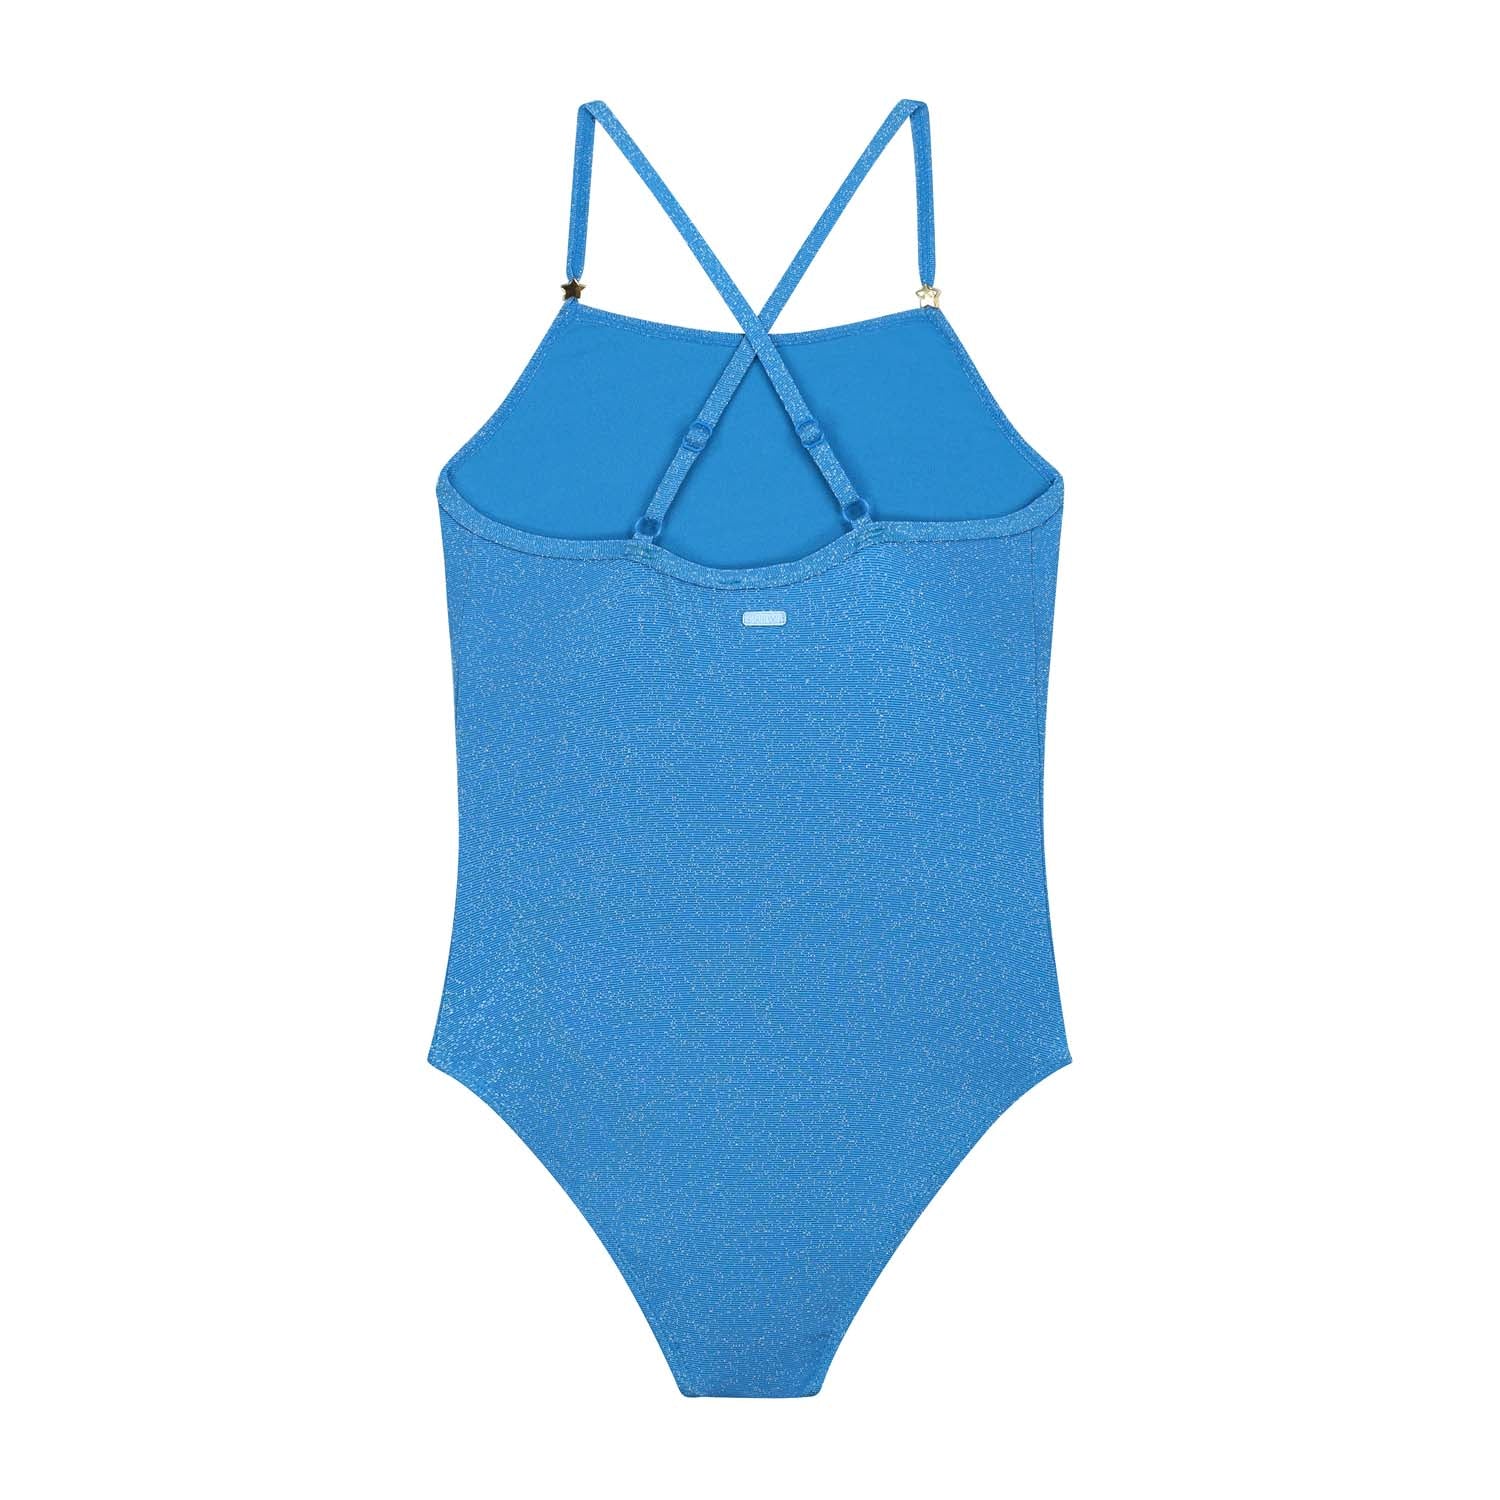 Meisjes LOIS swimsuit SICILY GLITTER van Shiwi in de kleur sports blue in maat 170-176.